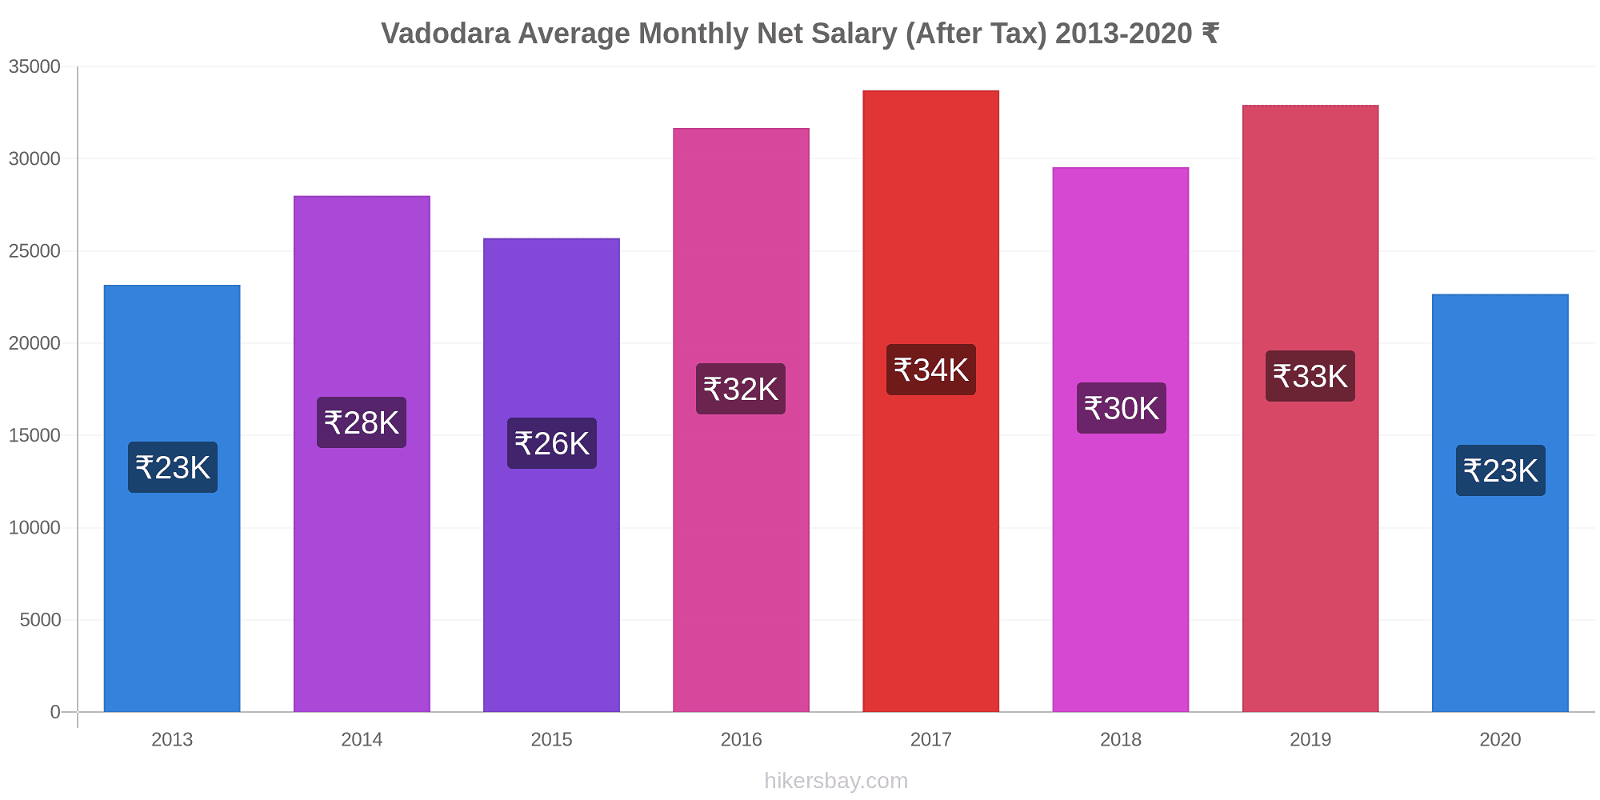 Vadodara price changes Average Monthly Net Salary (After Tax) hikersbay.com